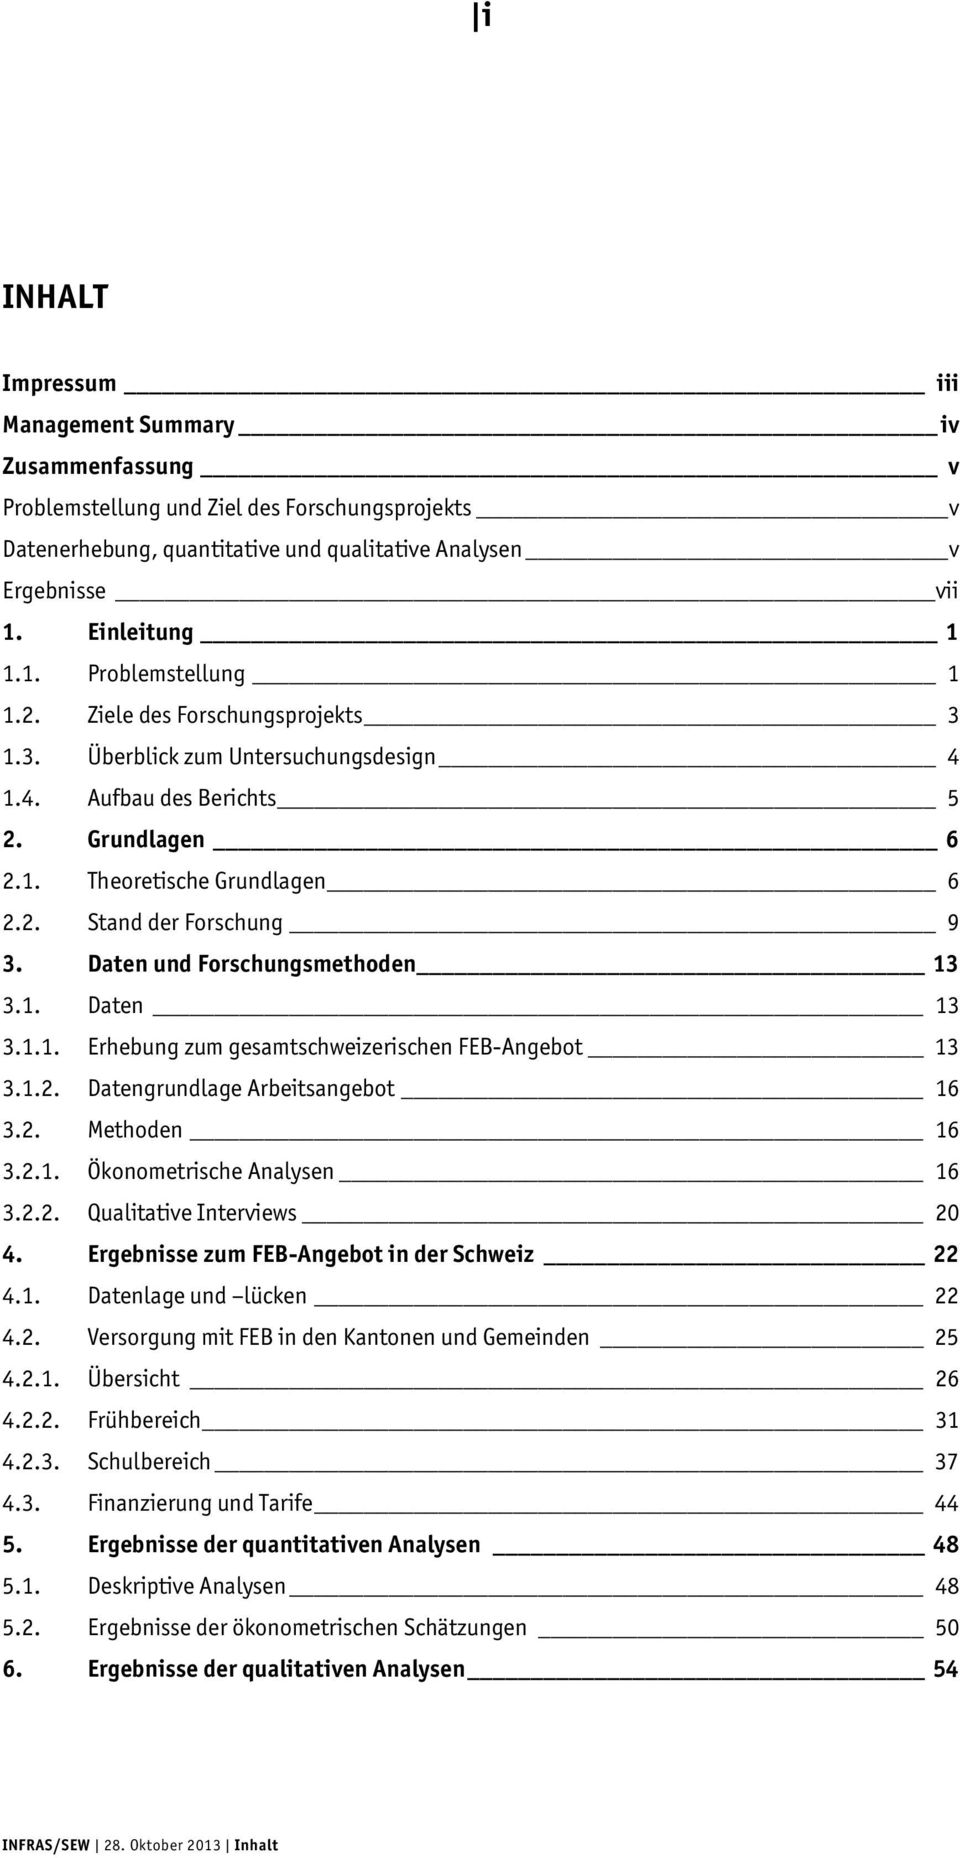 Daten und Forschungsmethoden 13 3.1. Daten 13 3.1.1. Erhebung zum gesamtschweizerischen FEB-Angebot 13 3.1.2. Datengrundlage Arbeitsangebot 16 3.2. Methoden 16 3.2.1. Ökonometrische Analysen 16 3.2.2. Qualitative Interviews 20 4.